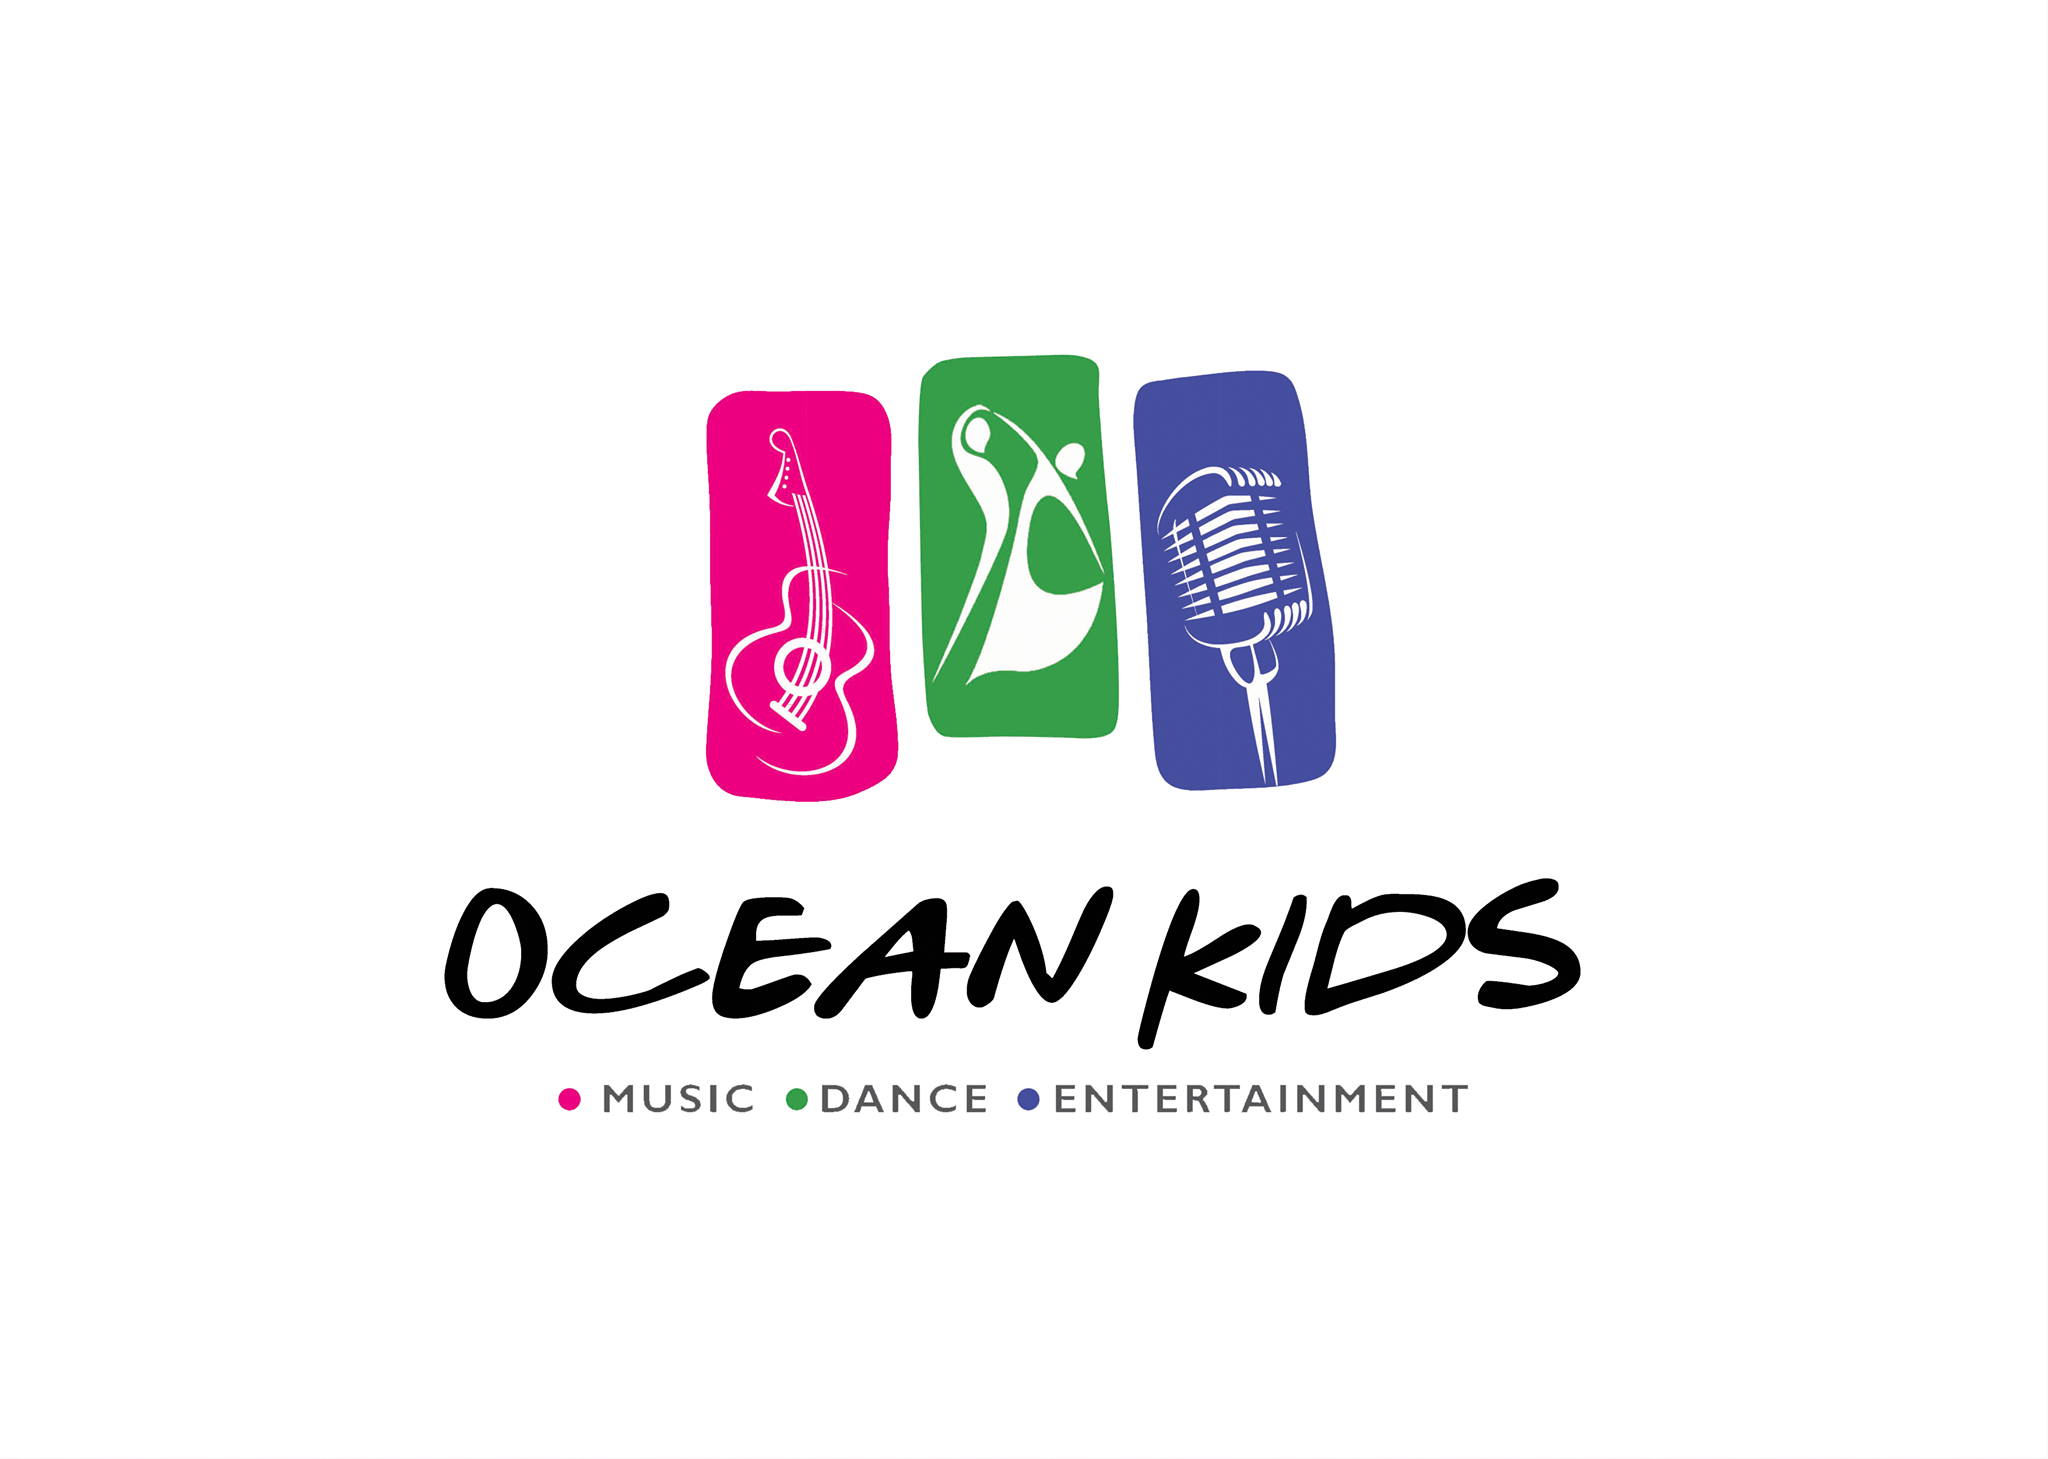 Ocean Kids Academy and Entertainment Dubai